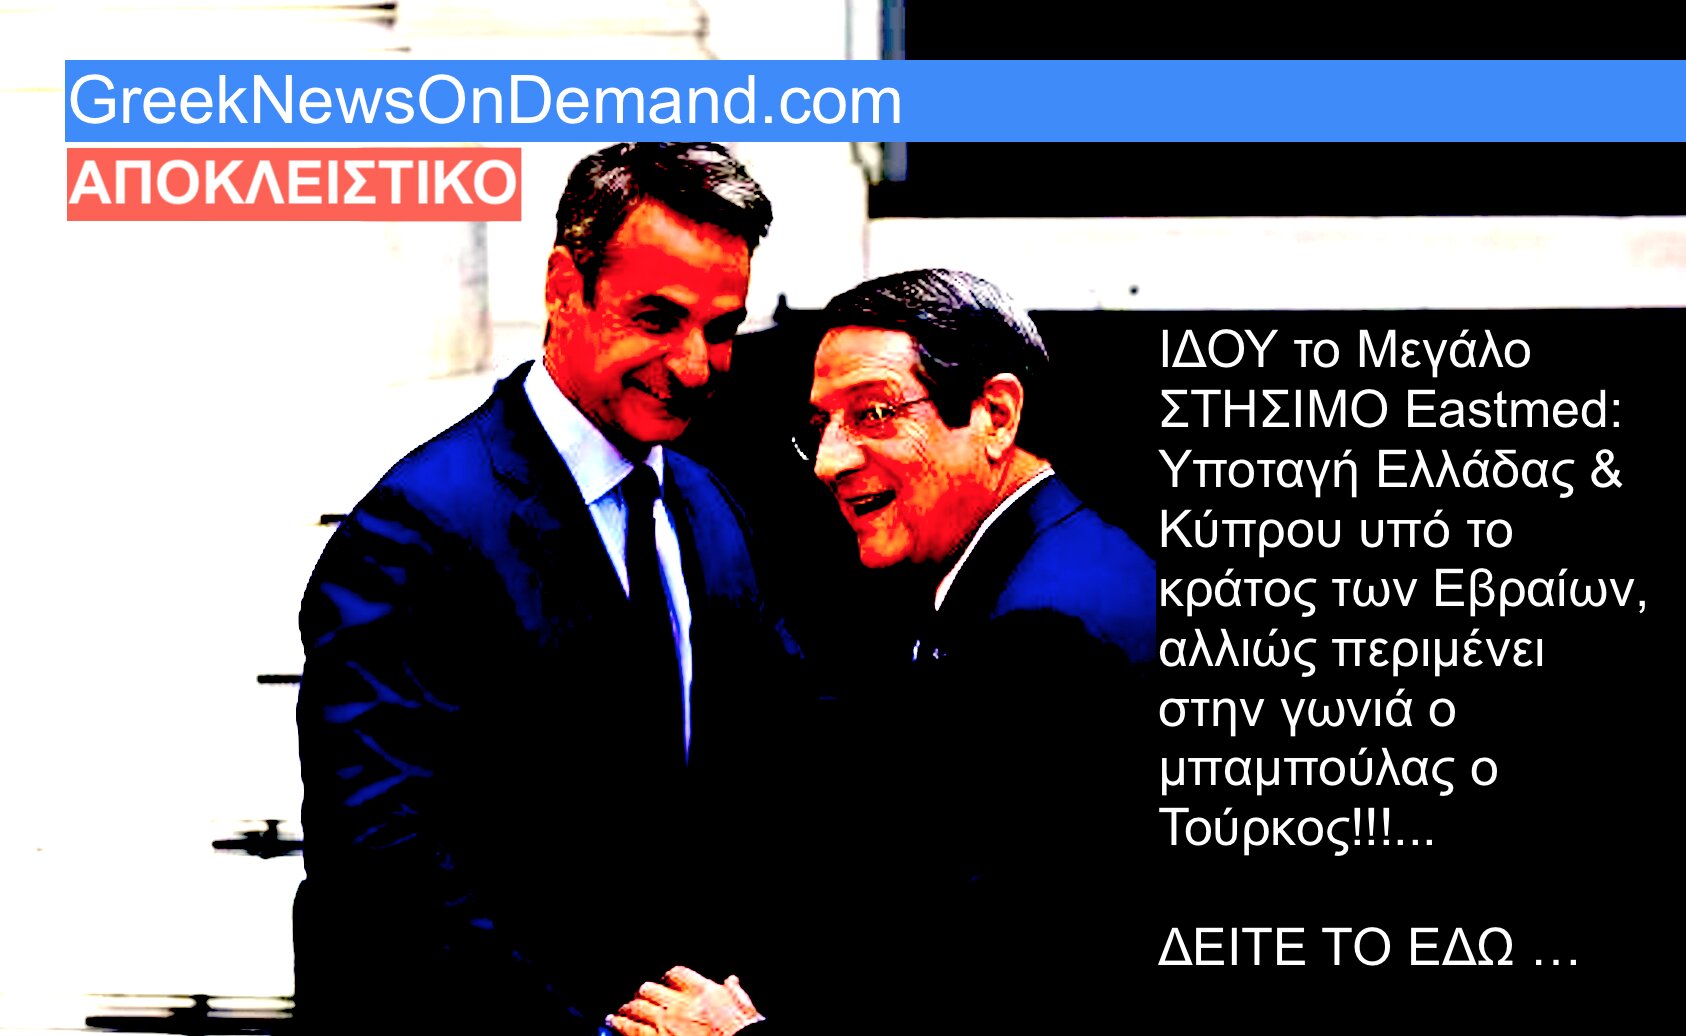 ΣΤΗΣΙΜΟ το Eastmed: Υποταγή Ελλάδας & Κύπρου υπό το κράτος Ισράηλ, αλλιώς περιμένει στην γωνιά ο μπαμπούλας ο Τούρκος!